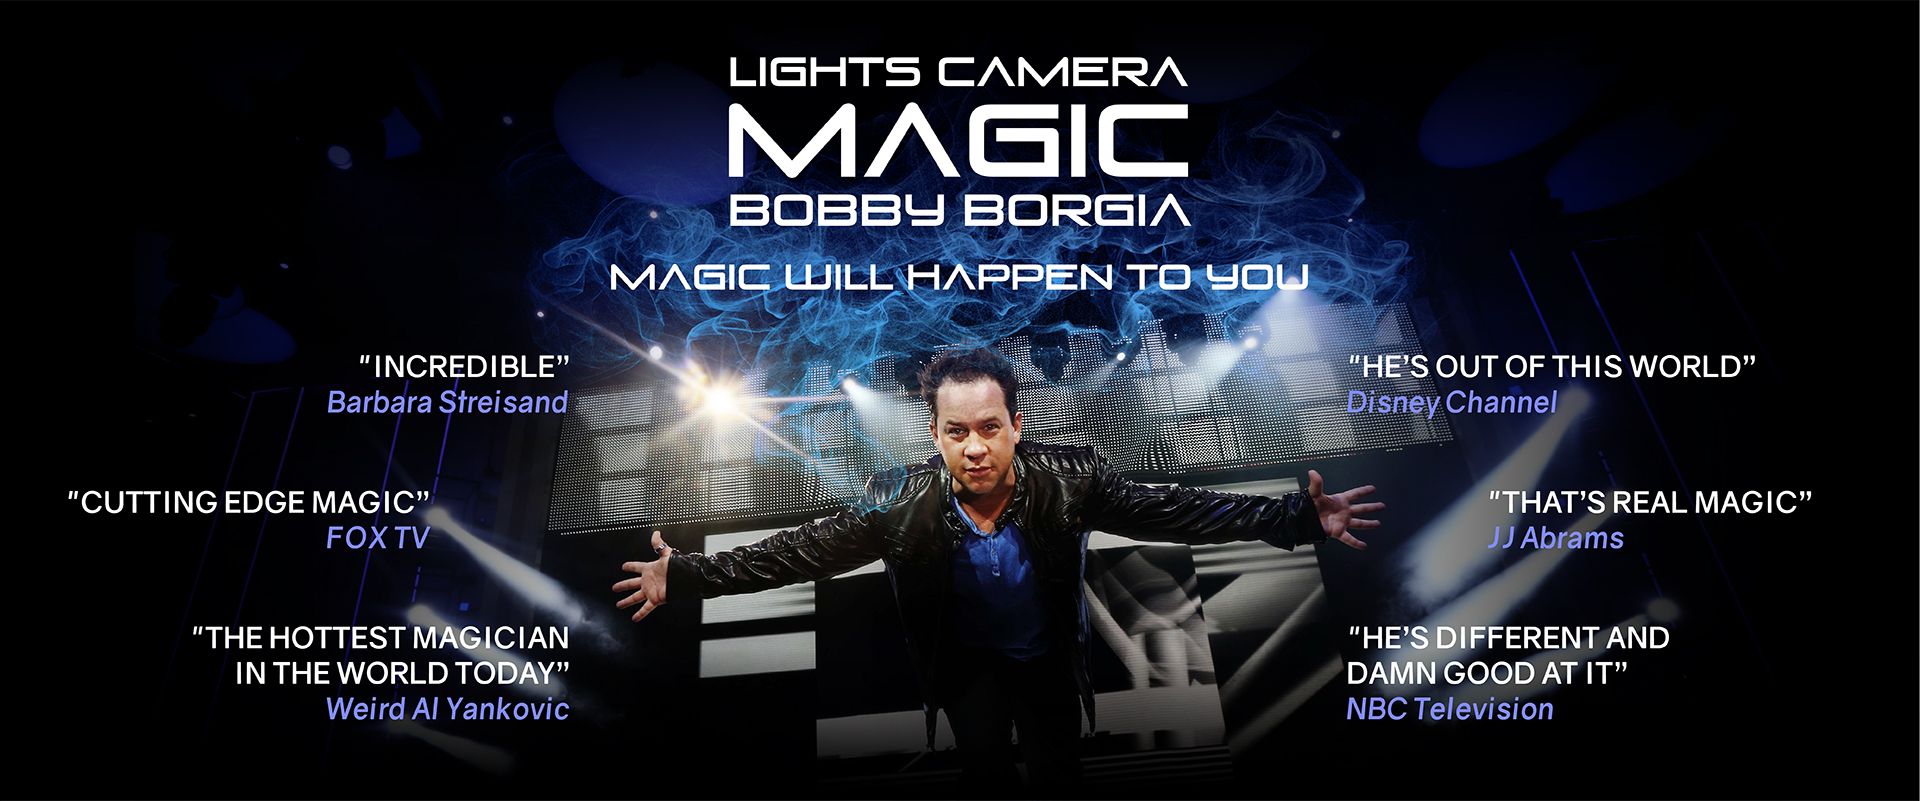 lights camera magic 01 compressor